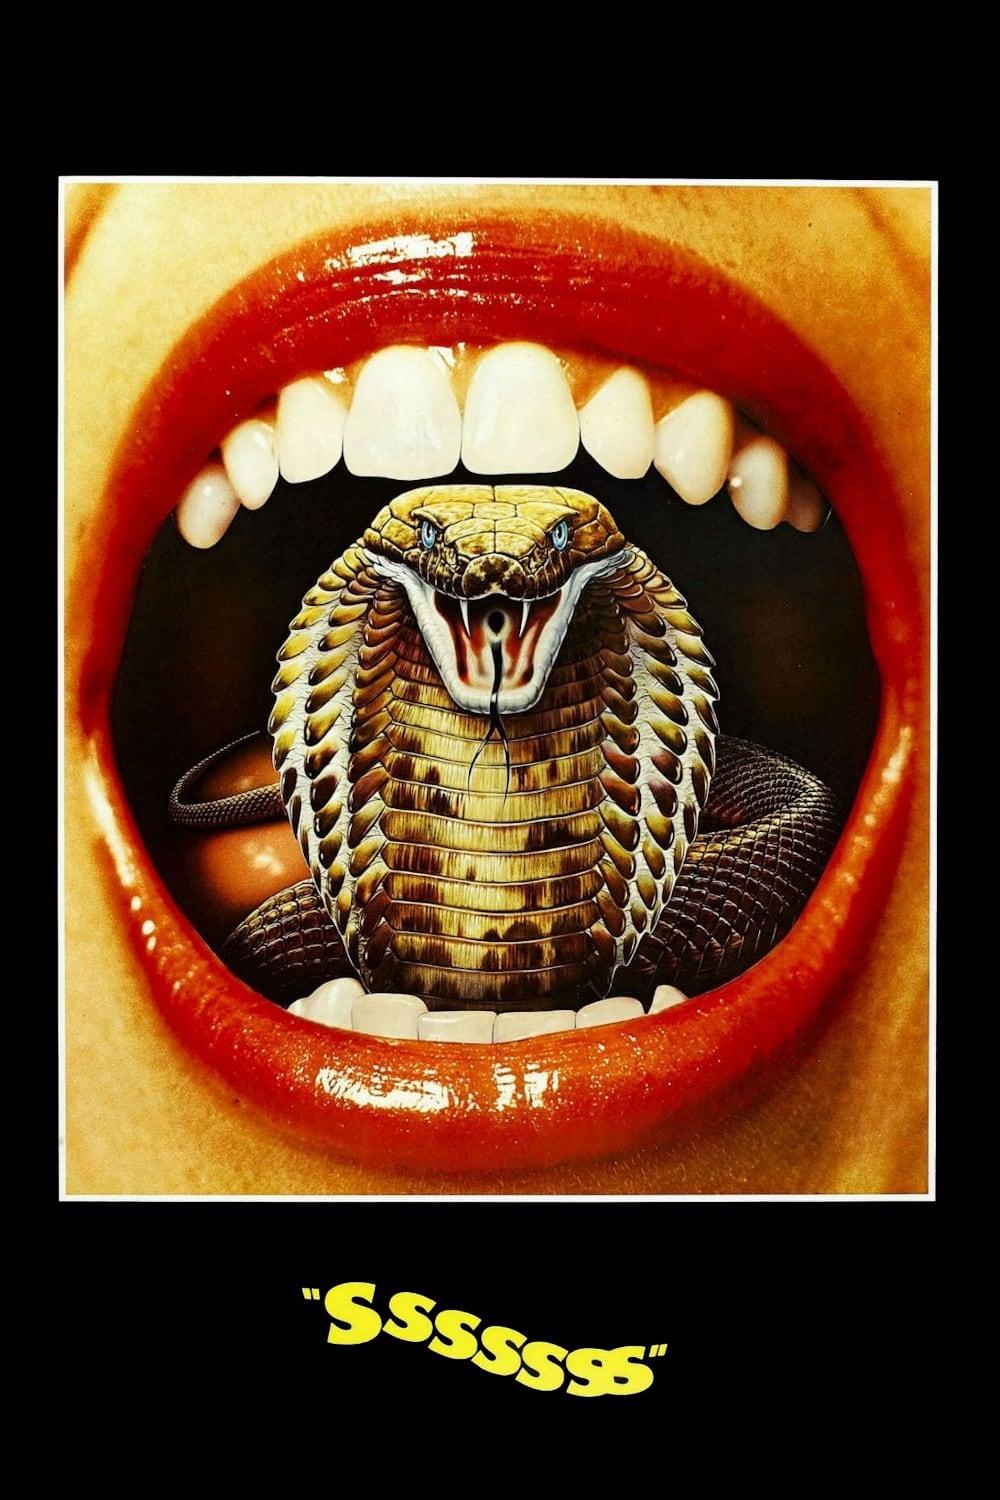 Sssssnake Kobra poster